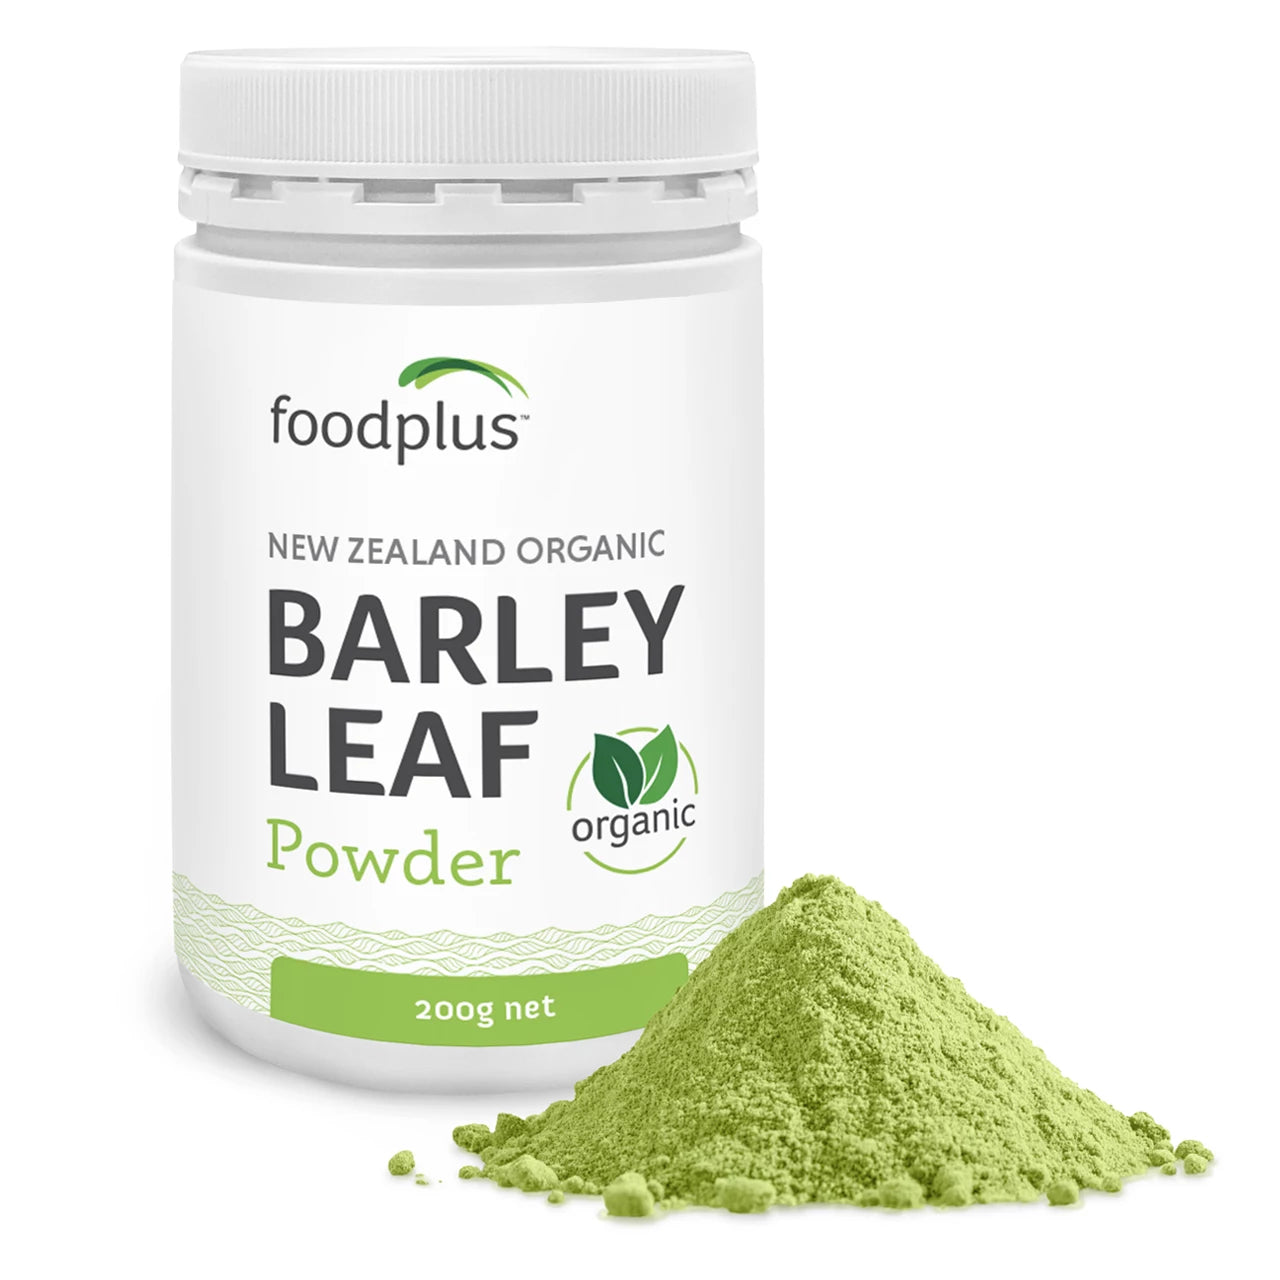 NZ Organic Barley Leaf Powder